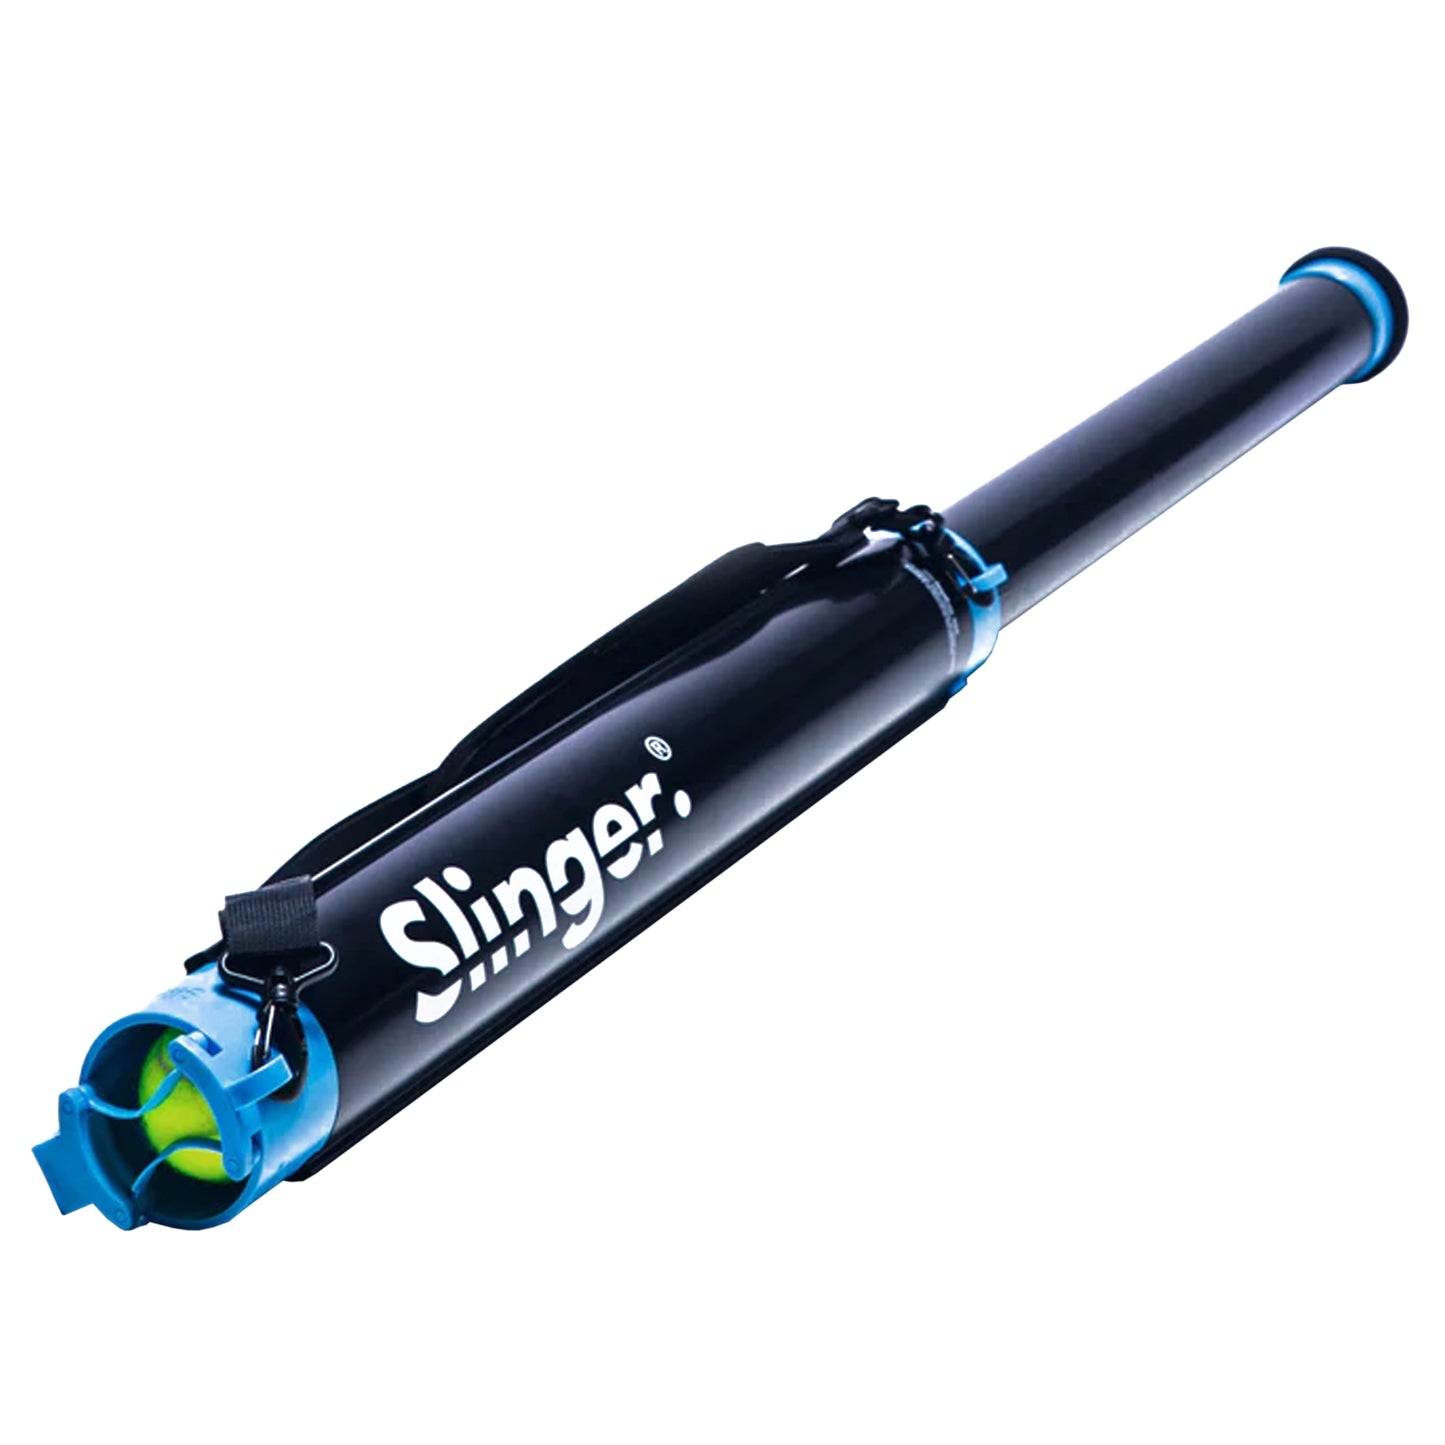 SLINGER Gen 3 tube collecteur de balles télescopique (R80060)